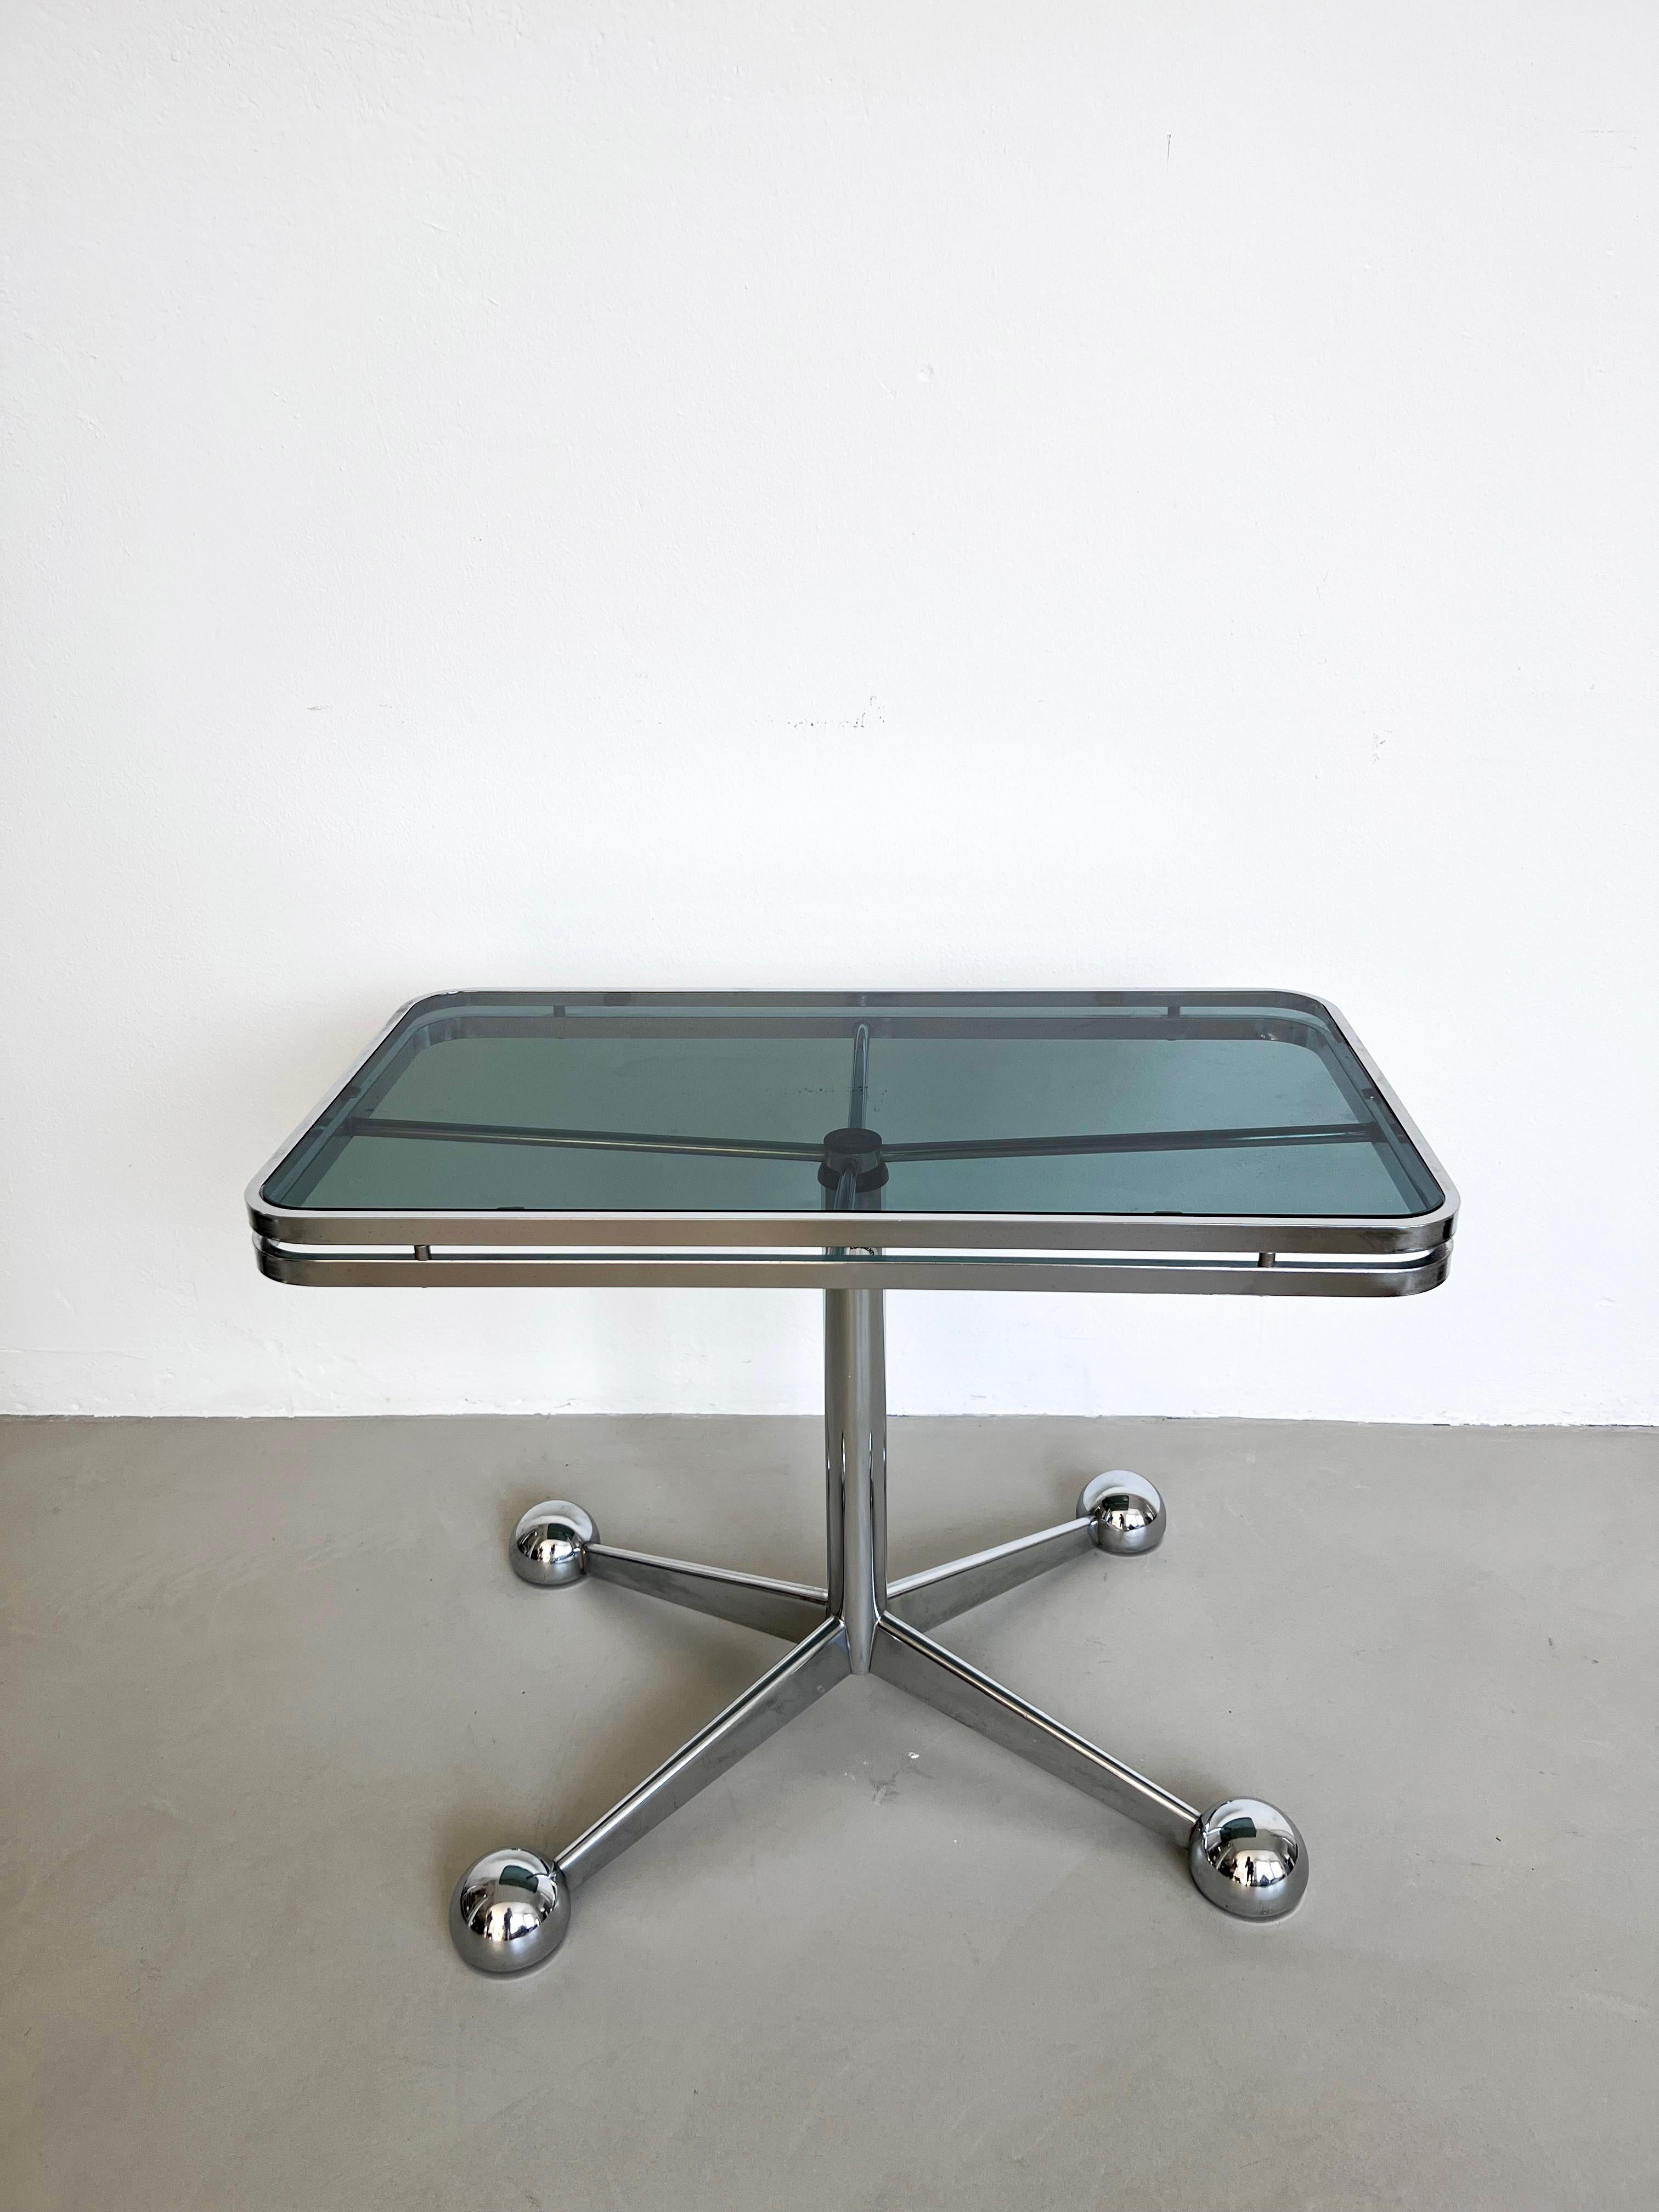 Ère spatiale Table basse/table de salle à manger italienne de l'ère spatiale, verre fumé, métal chromé, télescopique